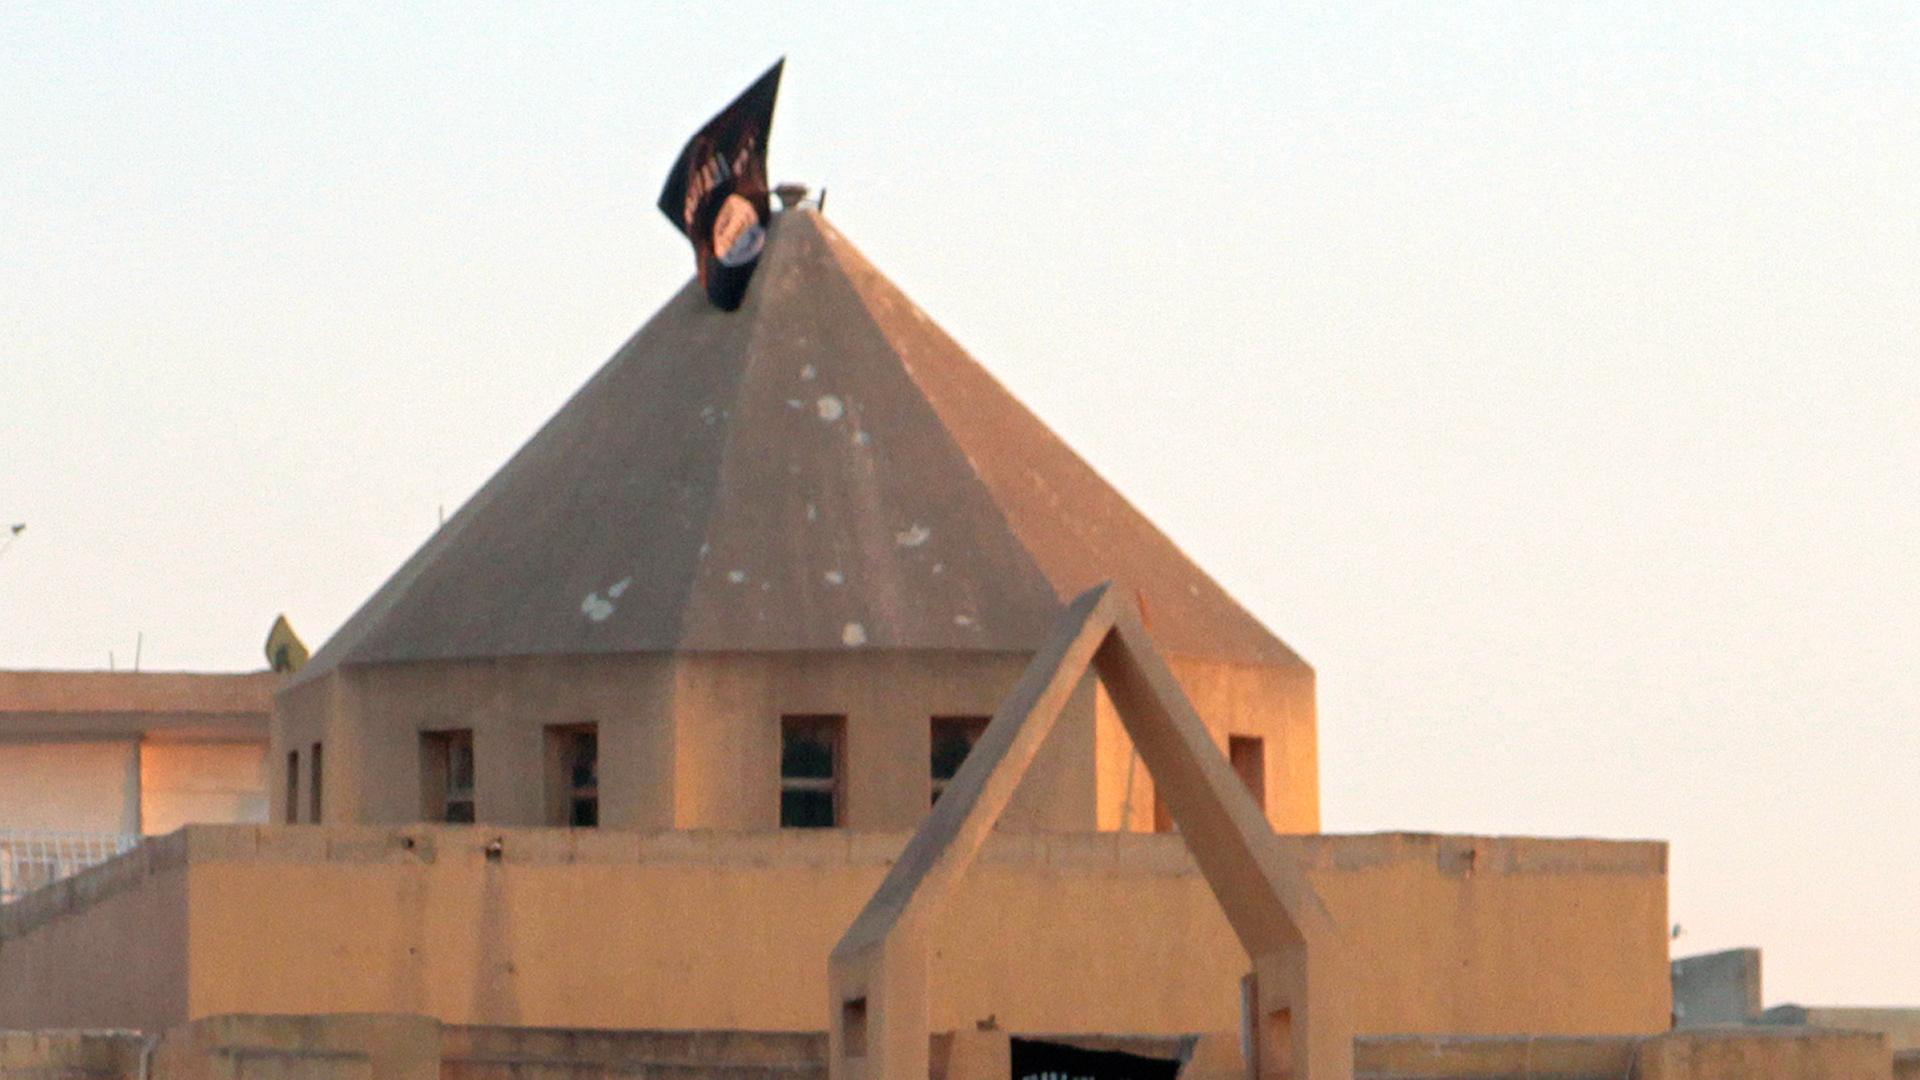 Zu sehen ist eine armenische Kirche in Rakka mit einer schwarzen Fahne auf dem Dach.